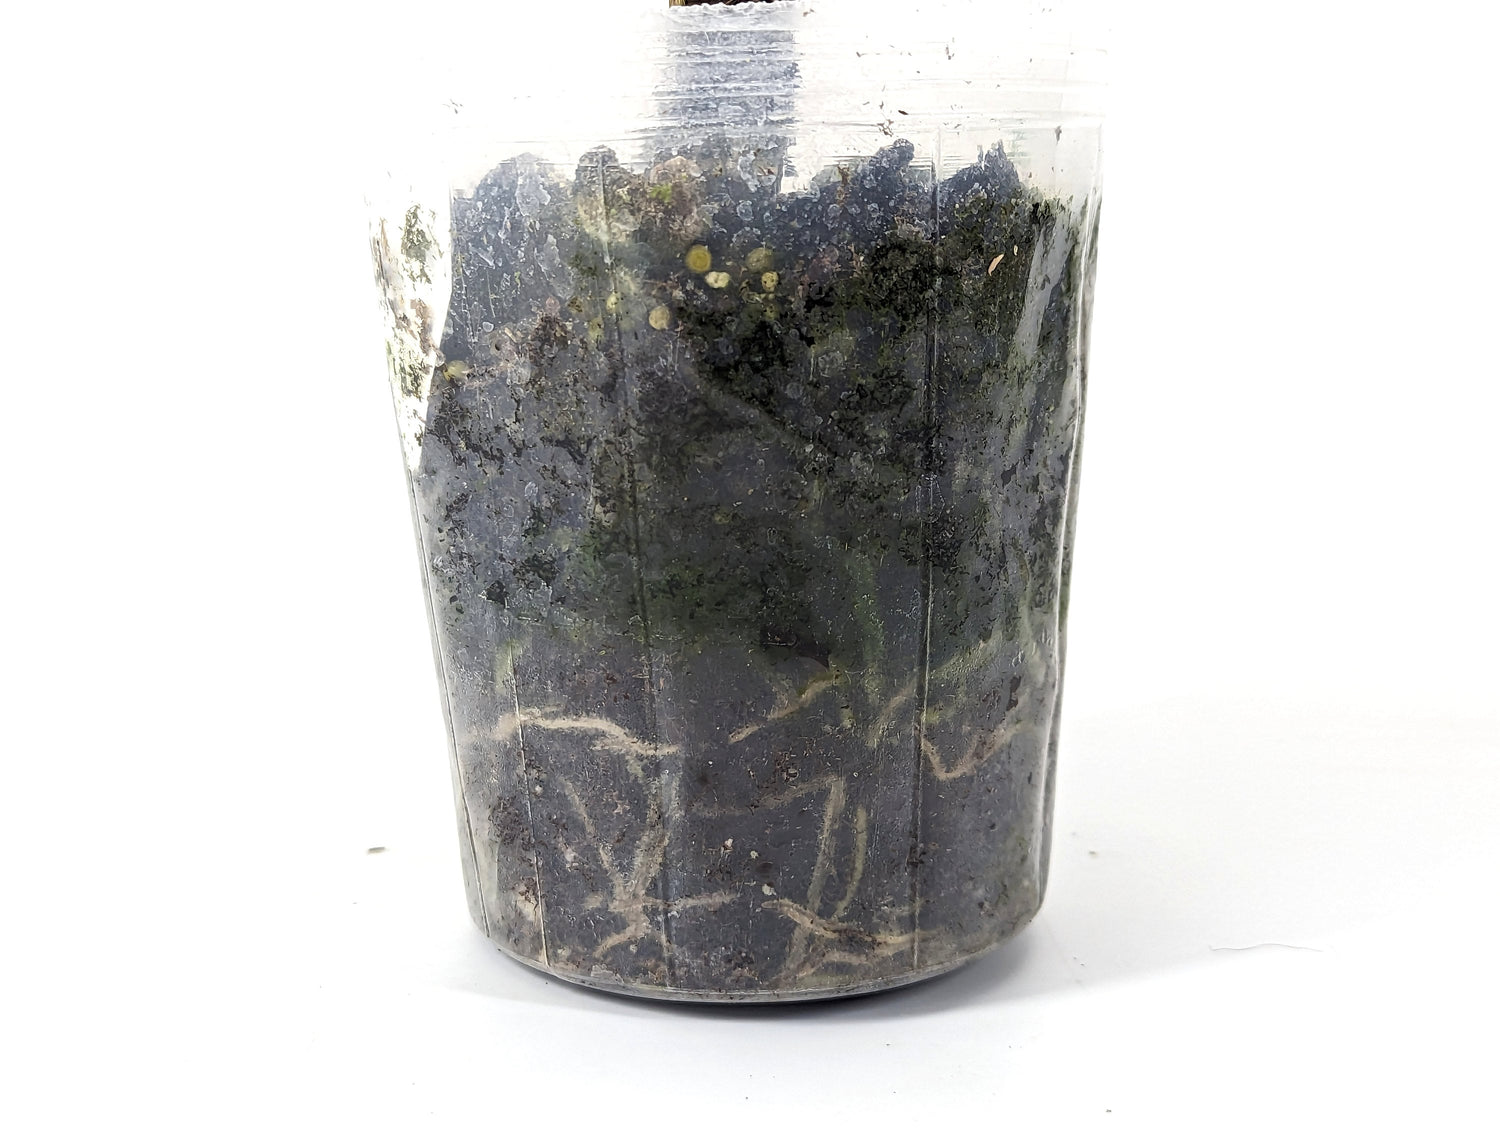 Anthurium Croatii Corrugado IMPERFECT Plant in 4 inch pot